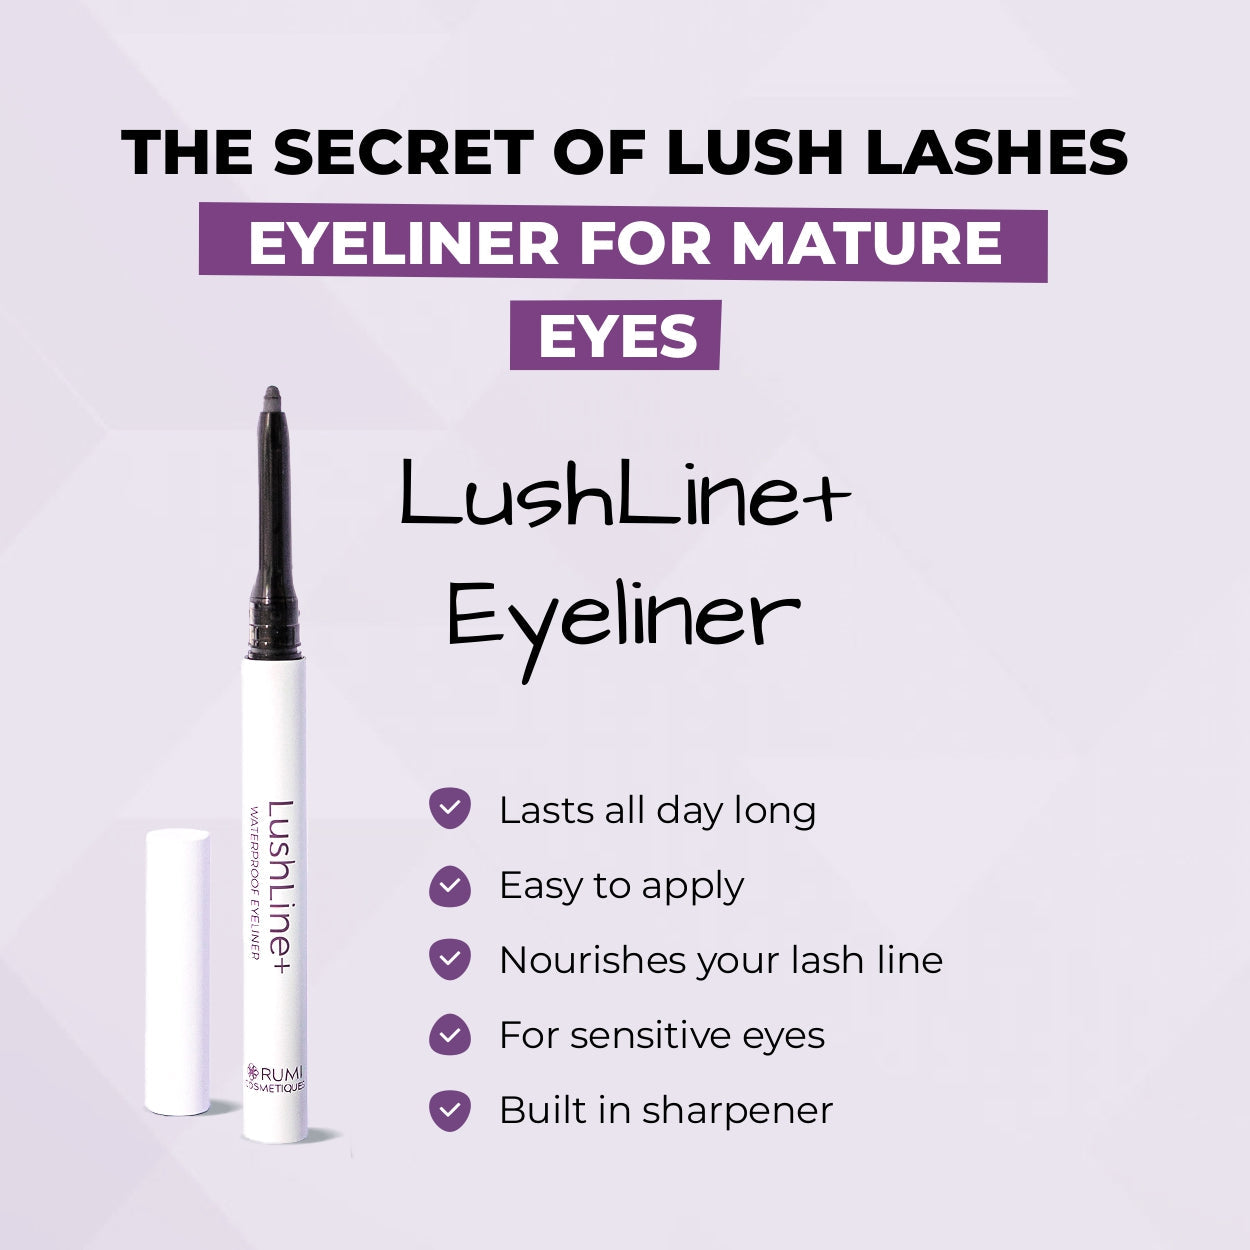 LushLine+ Waterproof Eyeliner